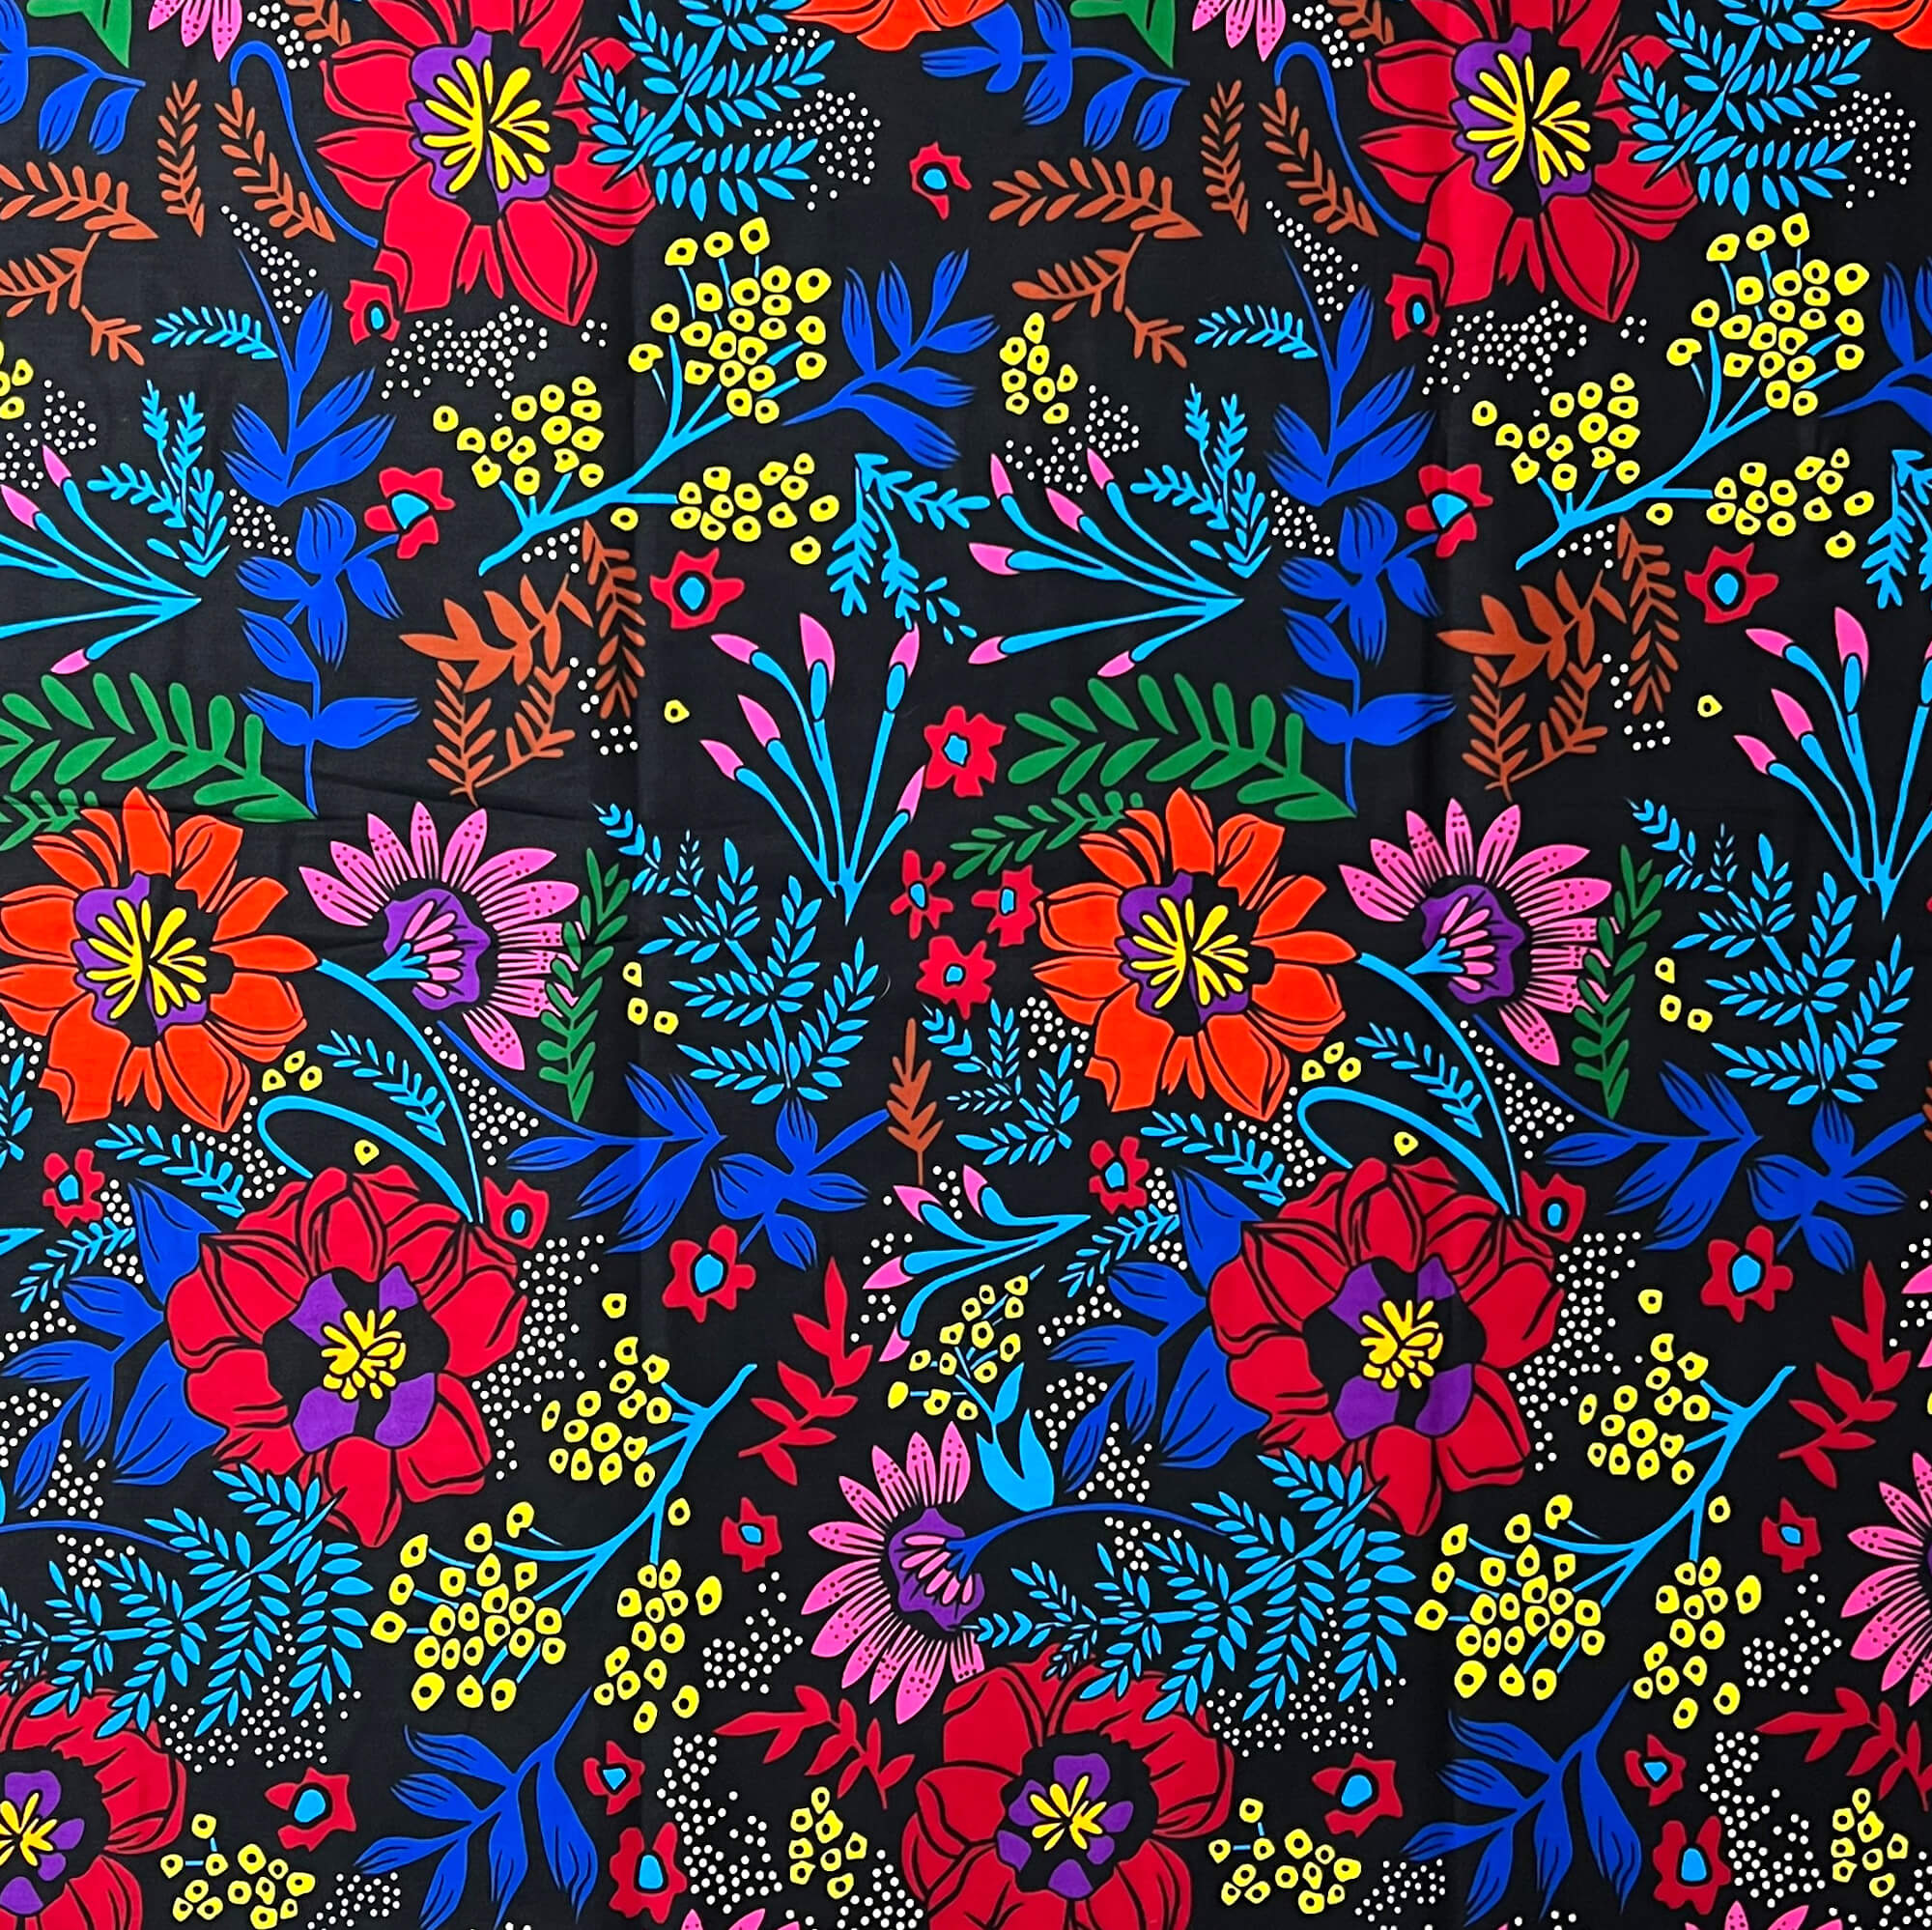 Tissu - Wax 100% coton - Fleurs - Multi-couleurs